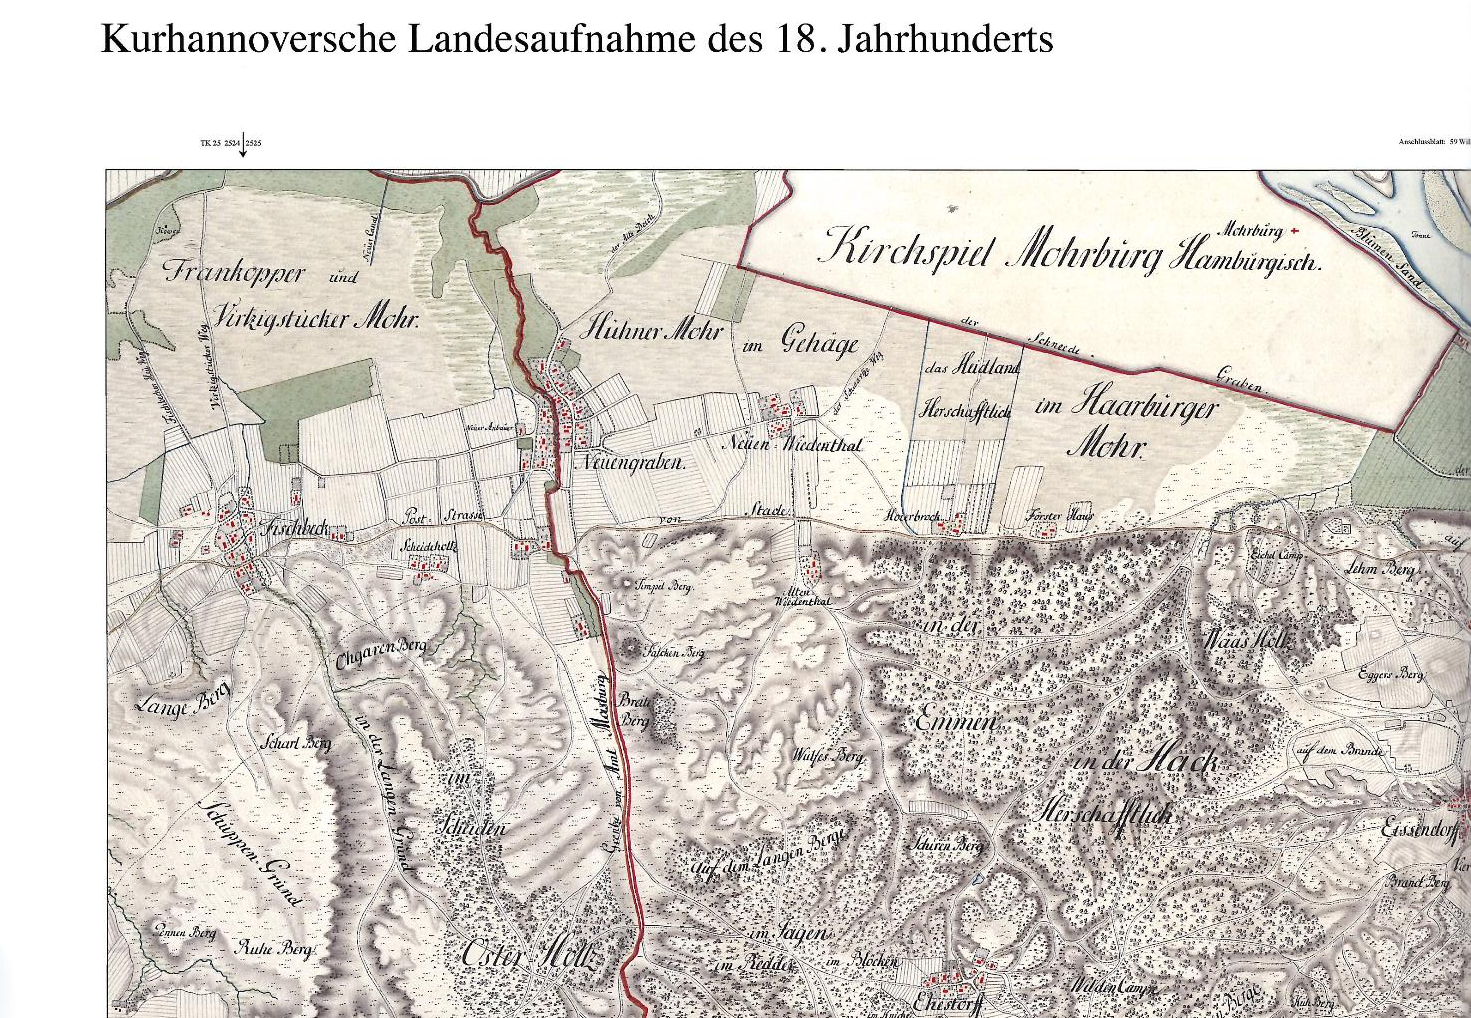 Kurhannoversche Landesaufnahme 18. Jahrhundert. Quelle: Auszug aus den Geodaten des Landesamtes für Geoinformation und Landesvermessung Niedersachsen